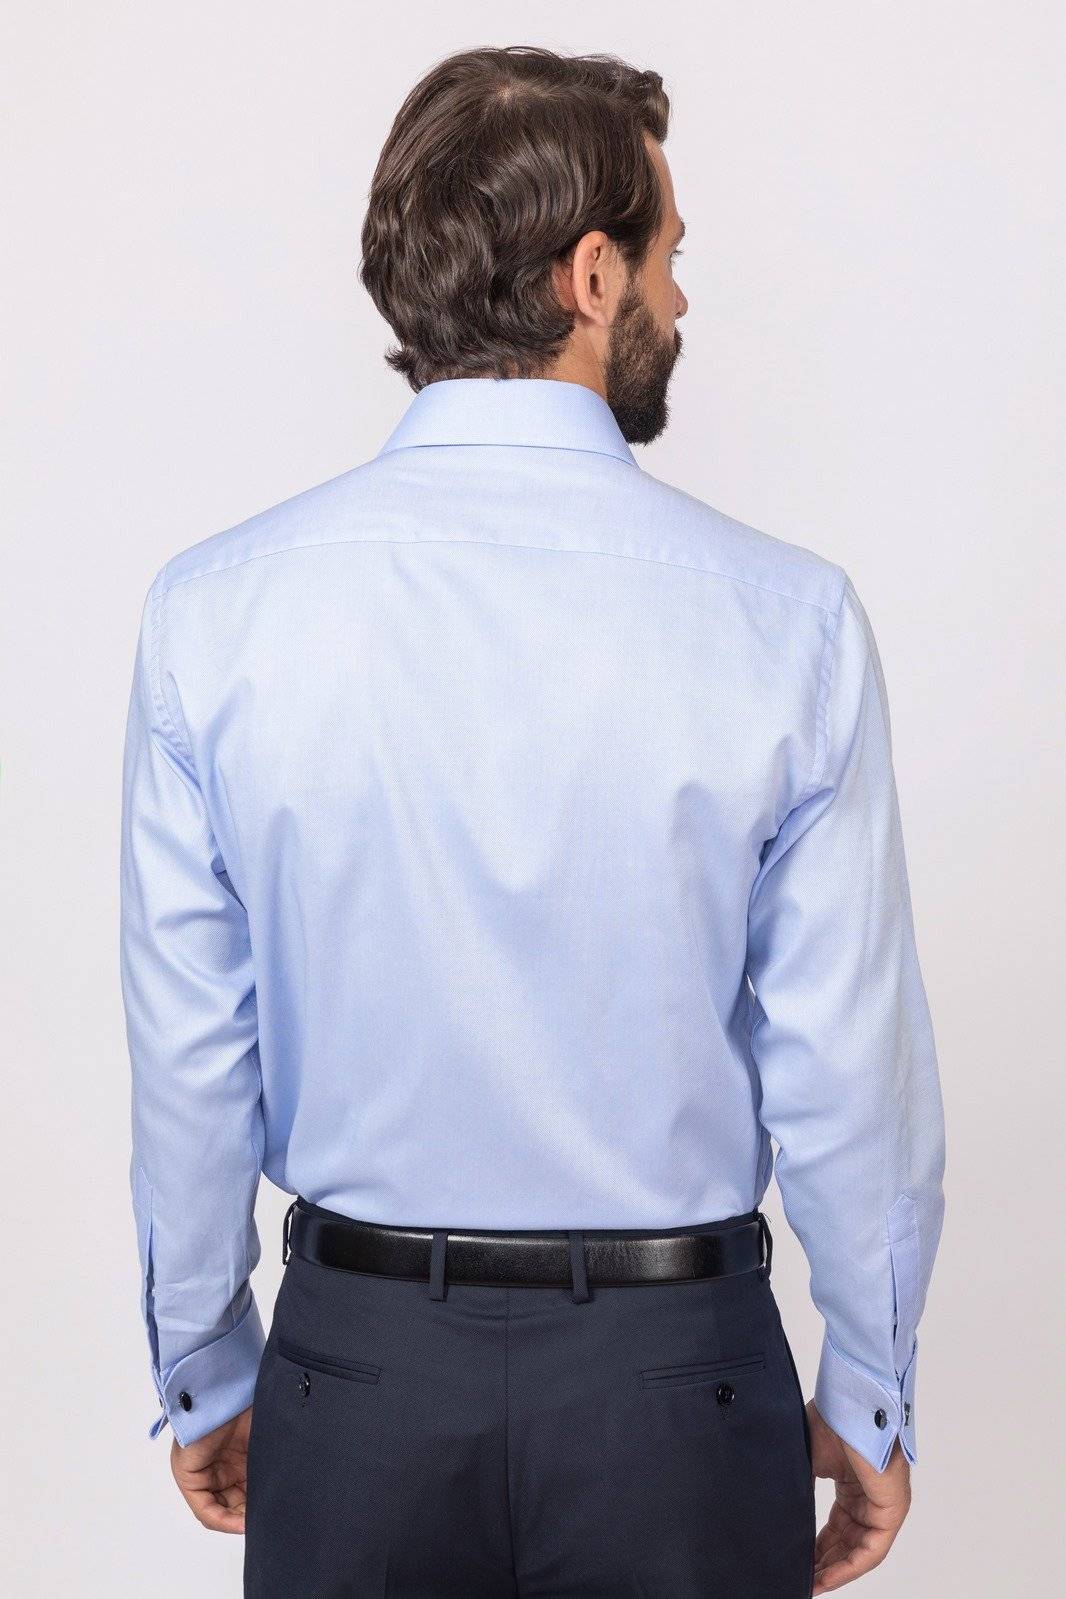 Курсовая работа - выбор материалов для изготовления мужской сорочки из полушерстяной ткани - файл мужская сорочка из полушерстяной ткани +.doc